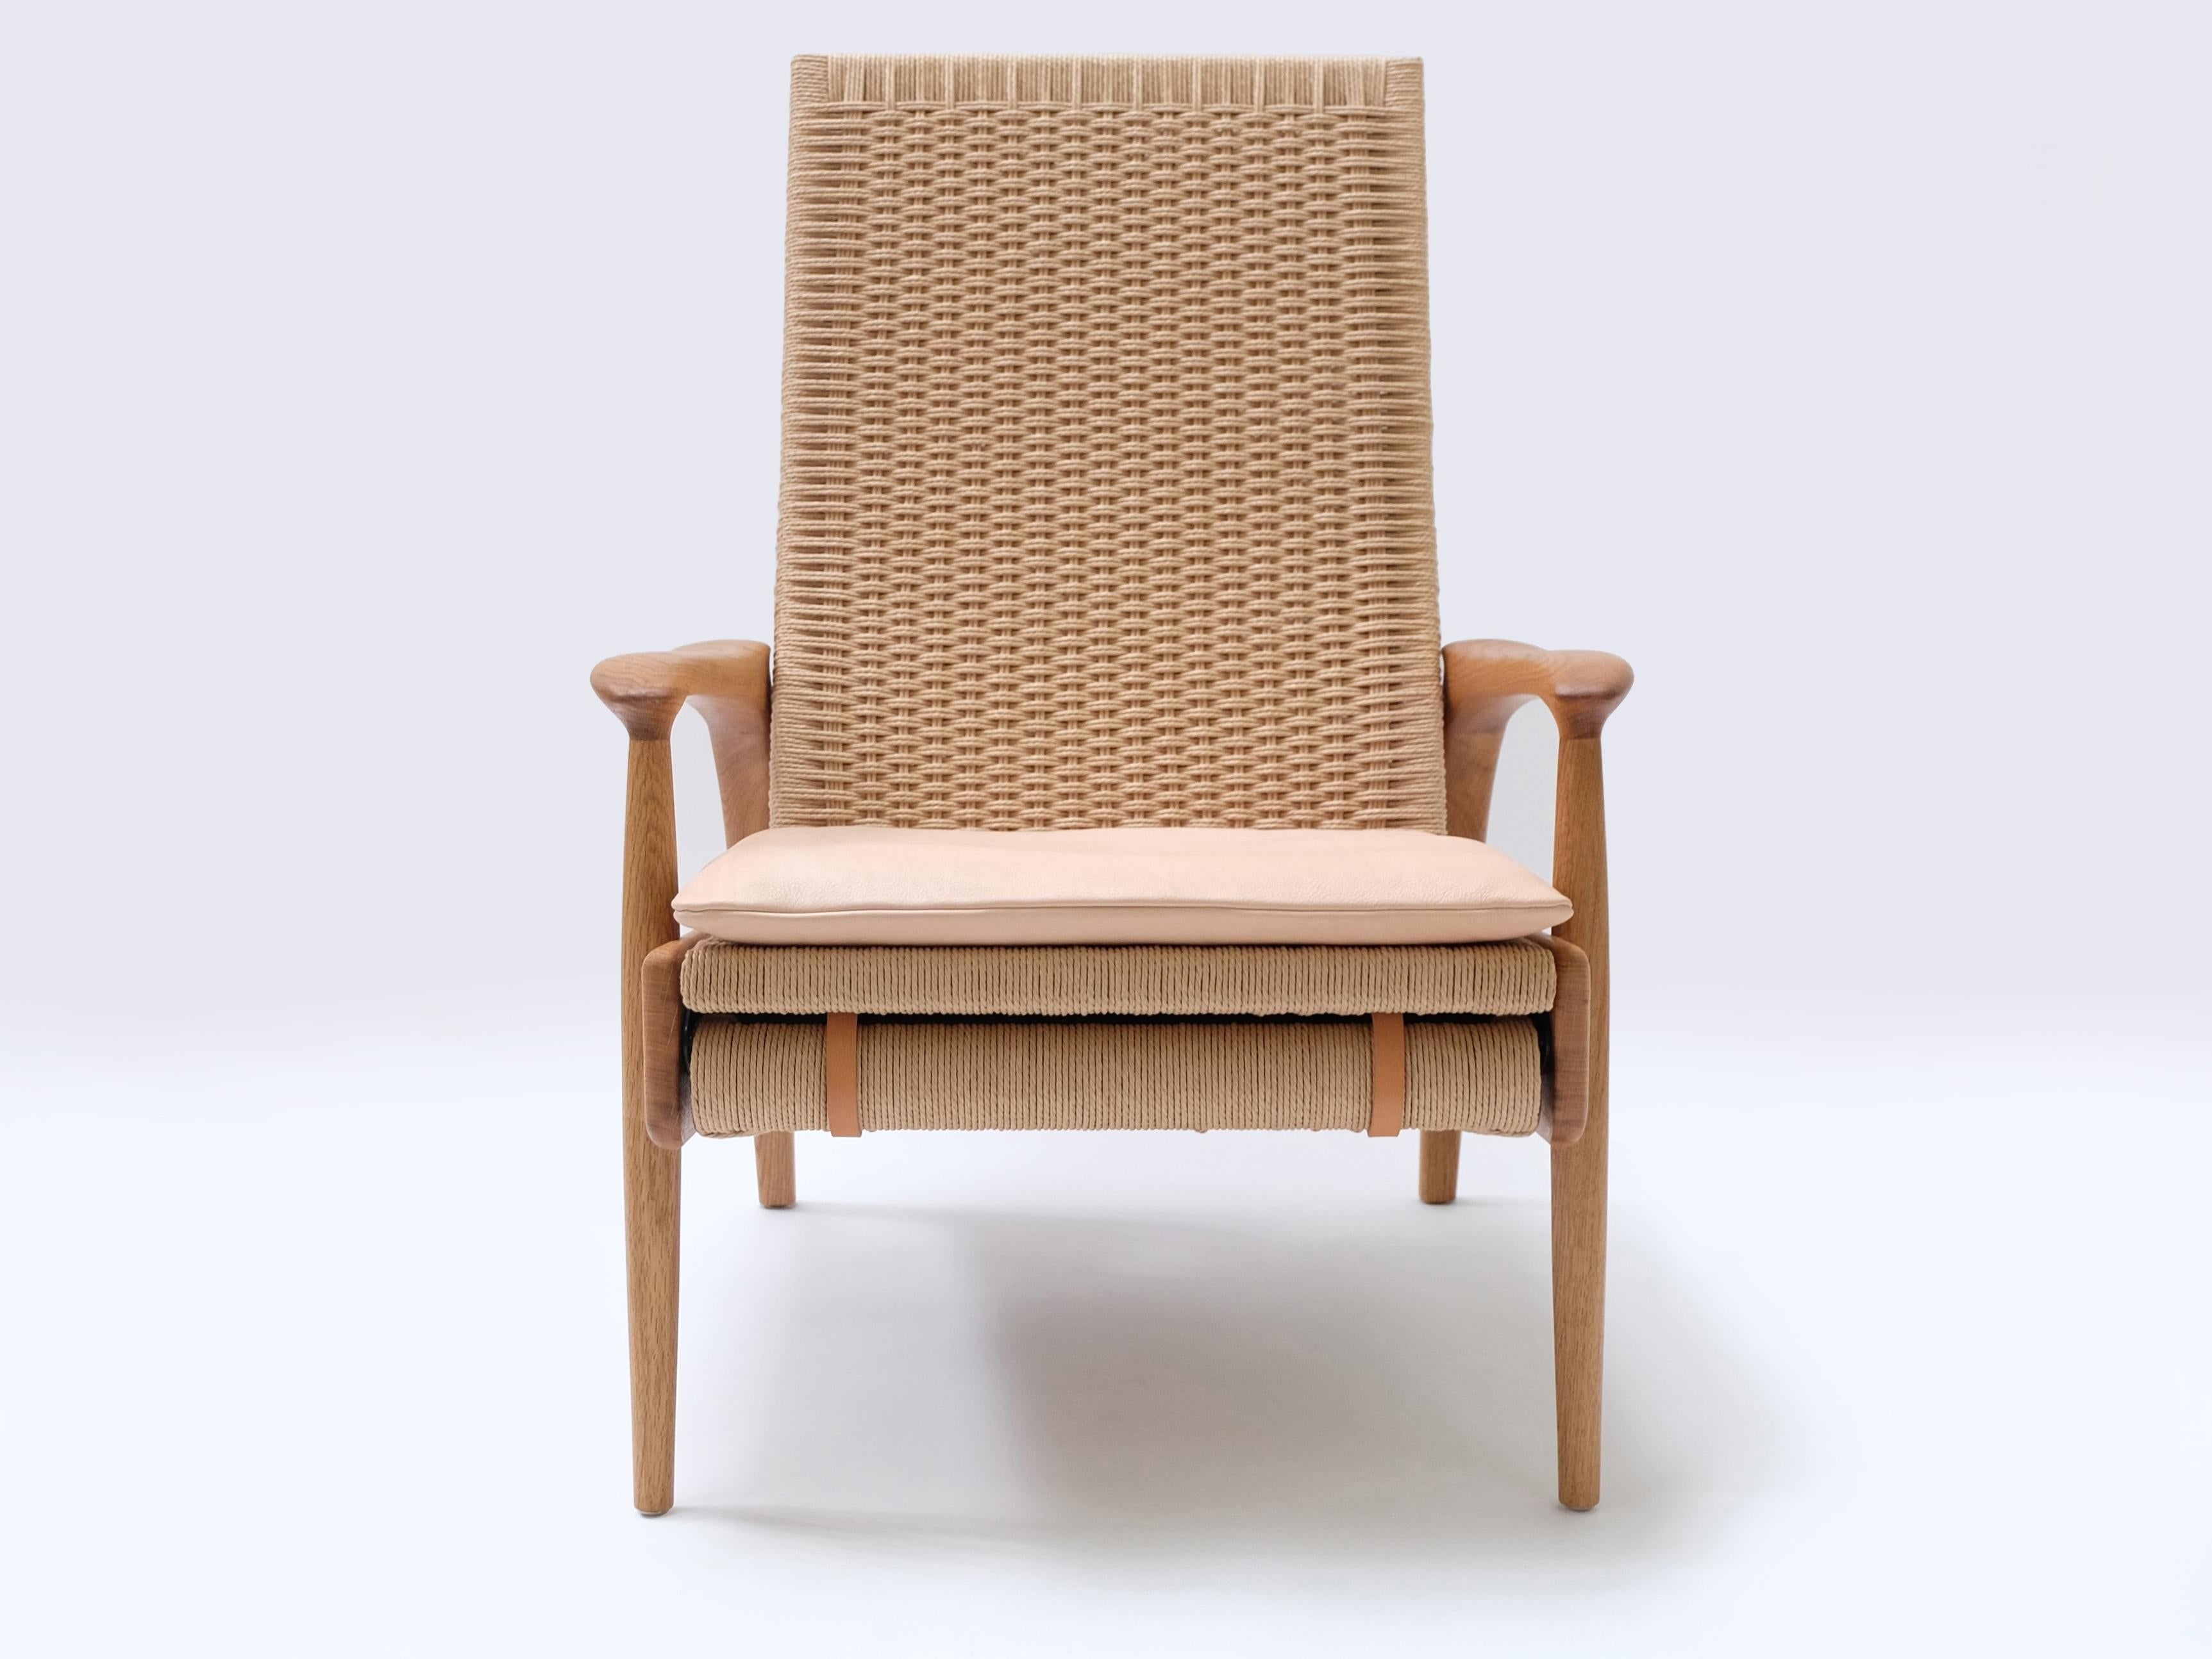 Maßgefertigte, handgefertigte Eco-Lounge-Stühle FENDRIK von Studio180degree
Abgebildet in nachhaltiger, massiver, naturgeölter Eiche und original dänischer Naturkordel

Edel - taktil - raffiniert - nachhaltig
Reclining Eco Lounge Chair FENDRIK ist